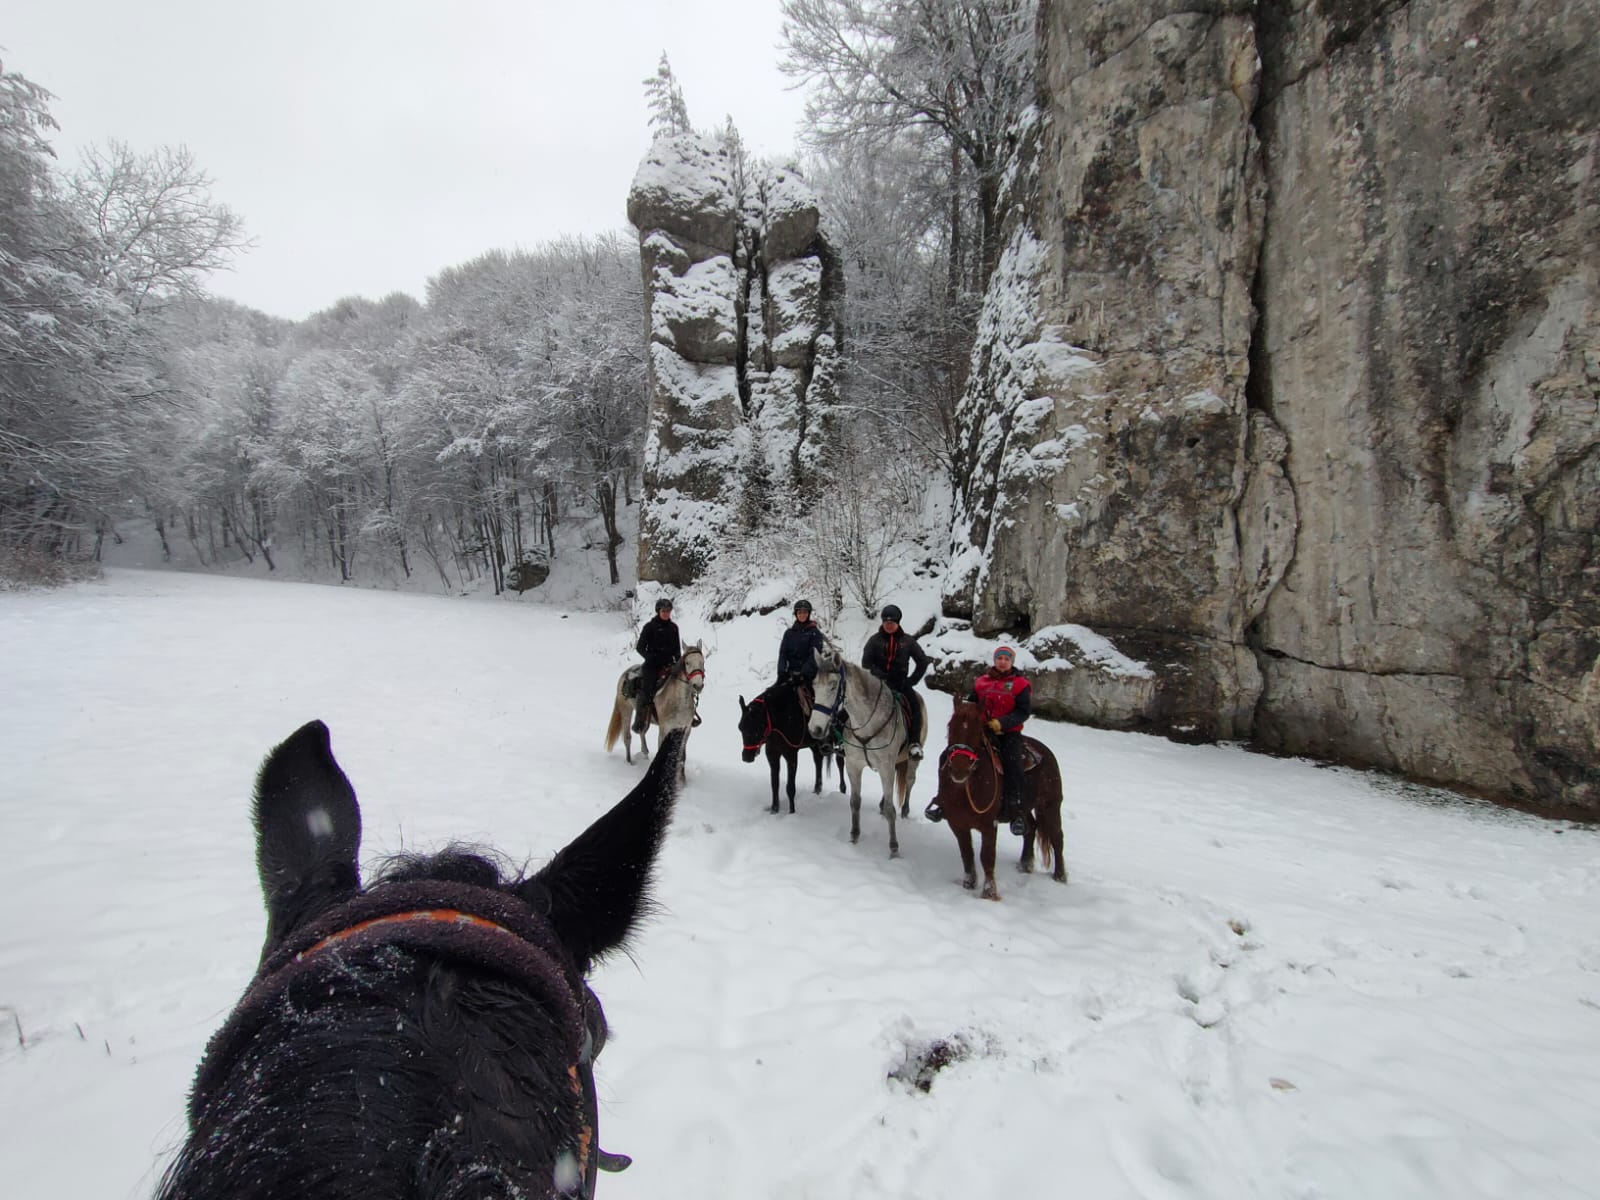 grupowe zdjecie jezdzcow i koni w zimie na tle wapiennych ostancow, na pierwszym tle uszy konia